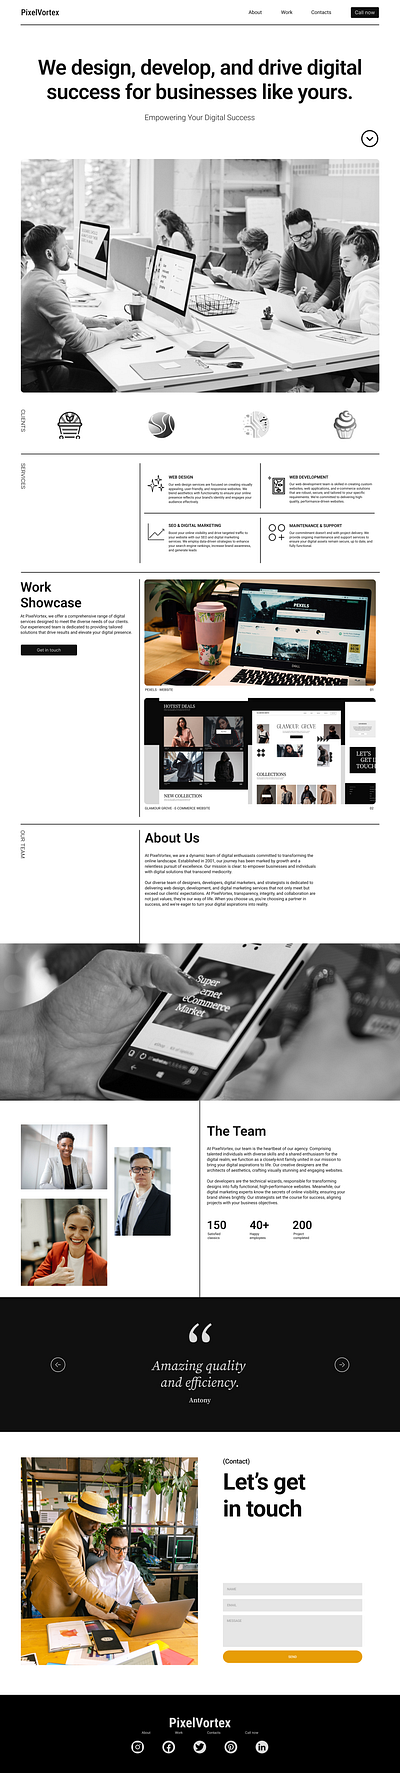 PixelVotex Website branding design graphic design typography ui ux web design